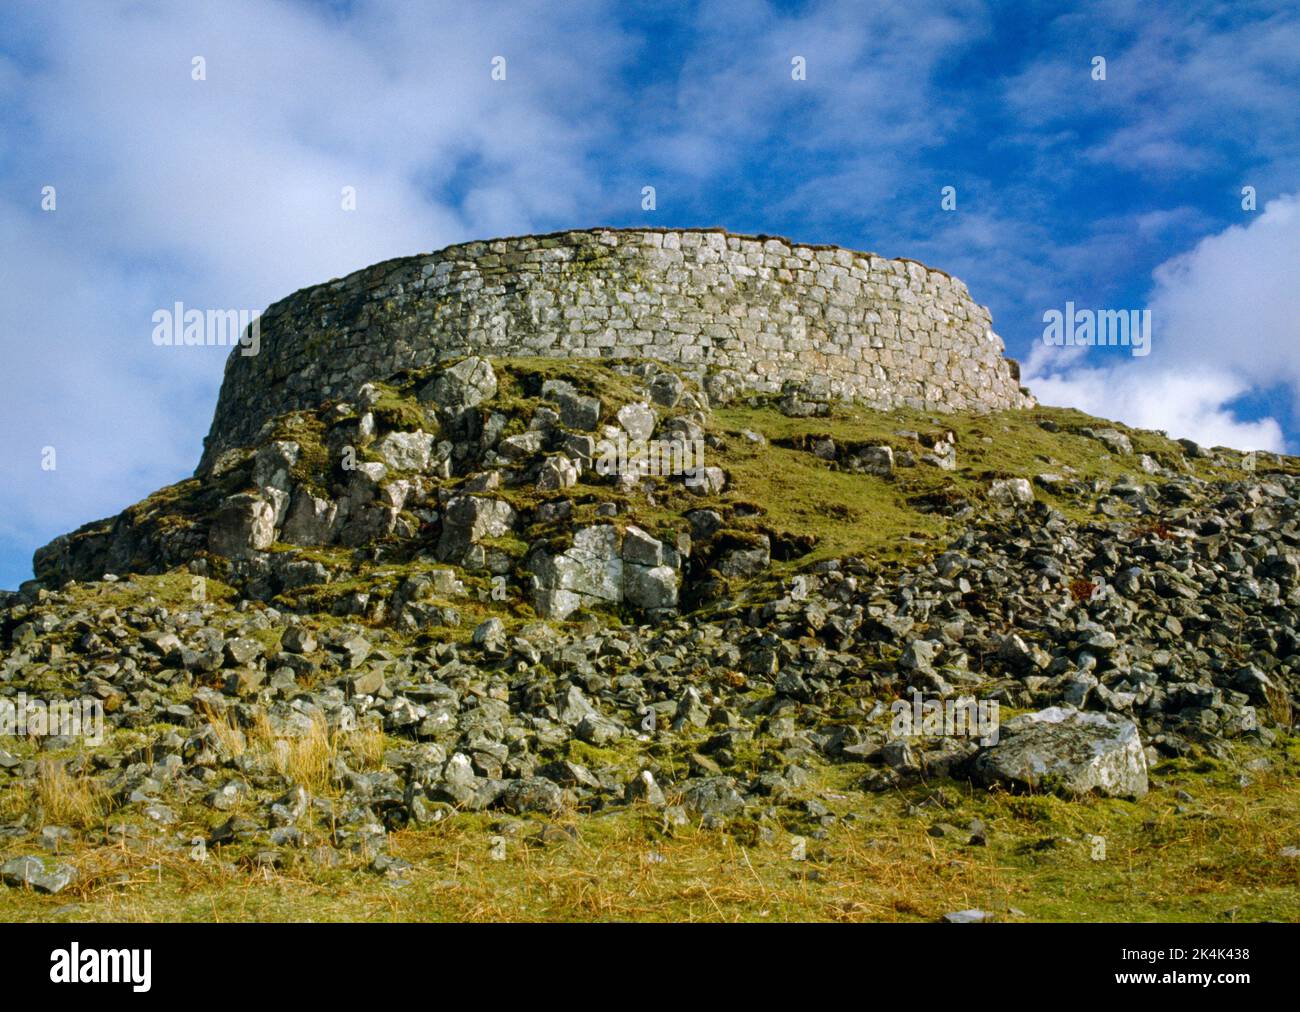 Dun Beag Broch, Struan, île de Skye, Écosse. La section nord du mur extérieur de la tour ronde défensive de l'âge de fer construite sur un knoll rocheux. Banque D'Images